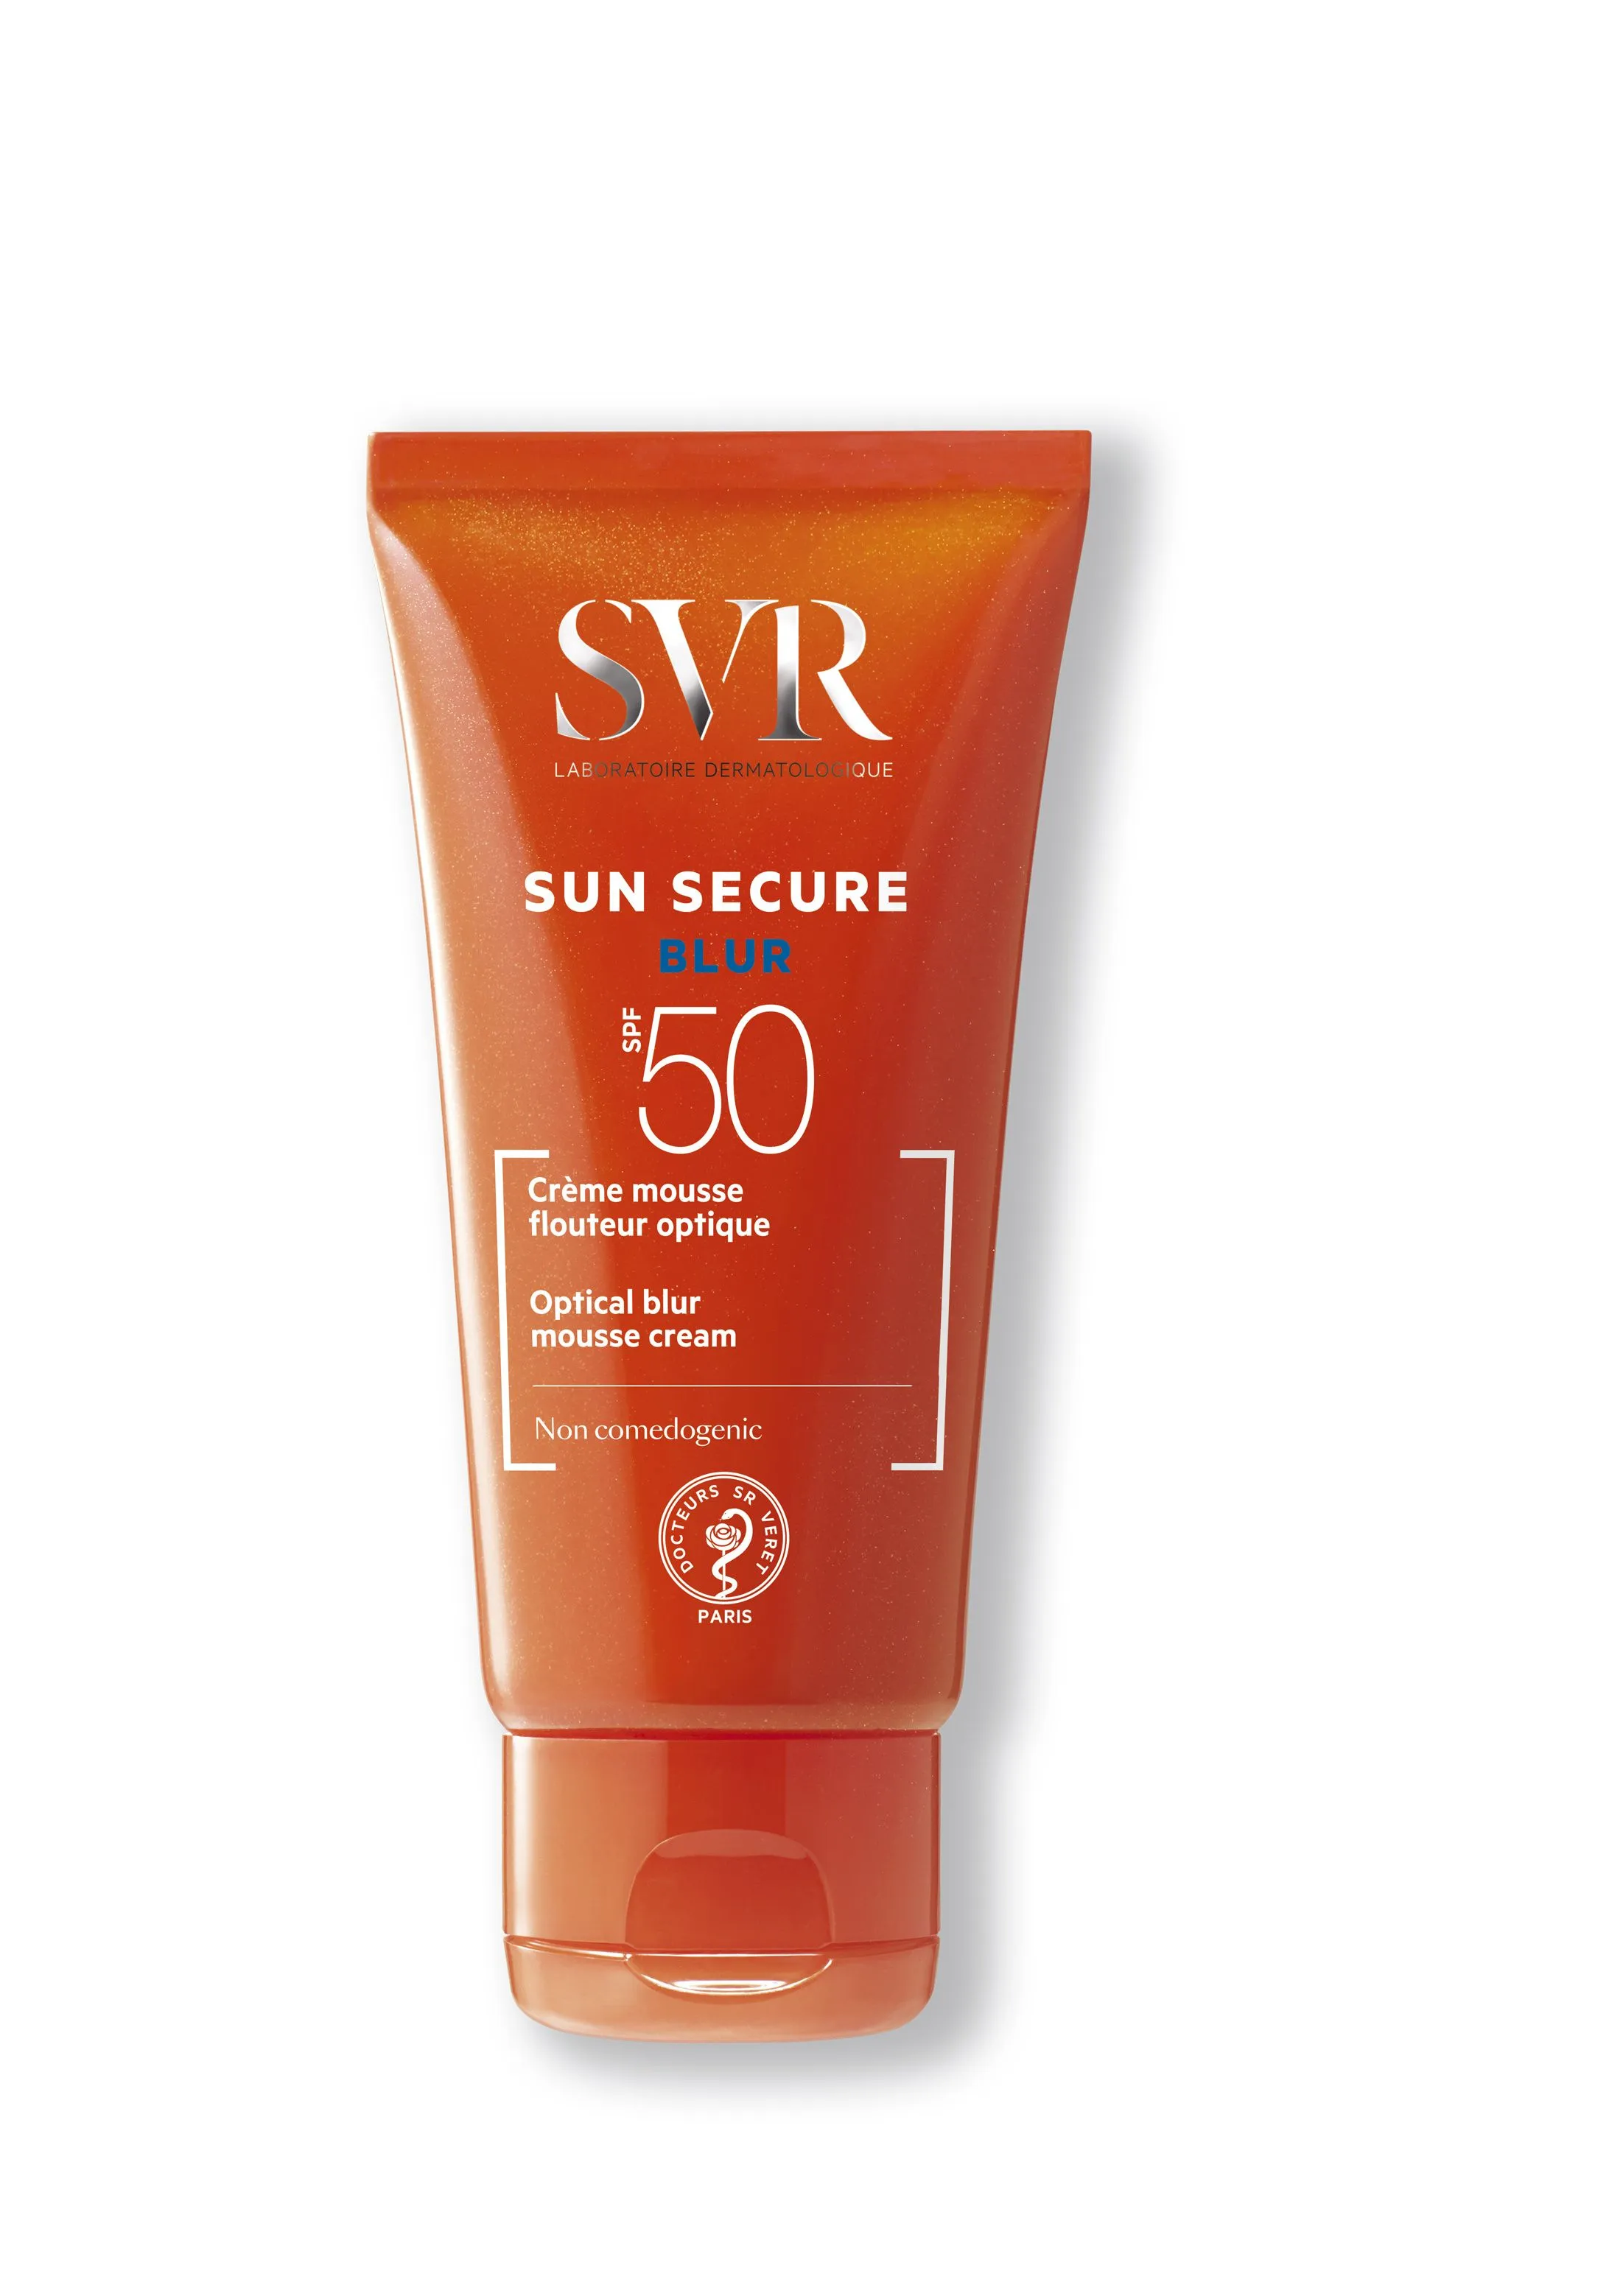 SVR Sun Secure Blur SPF50 opalovací pěna 50 ml